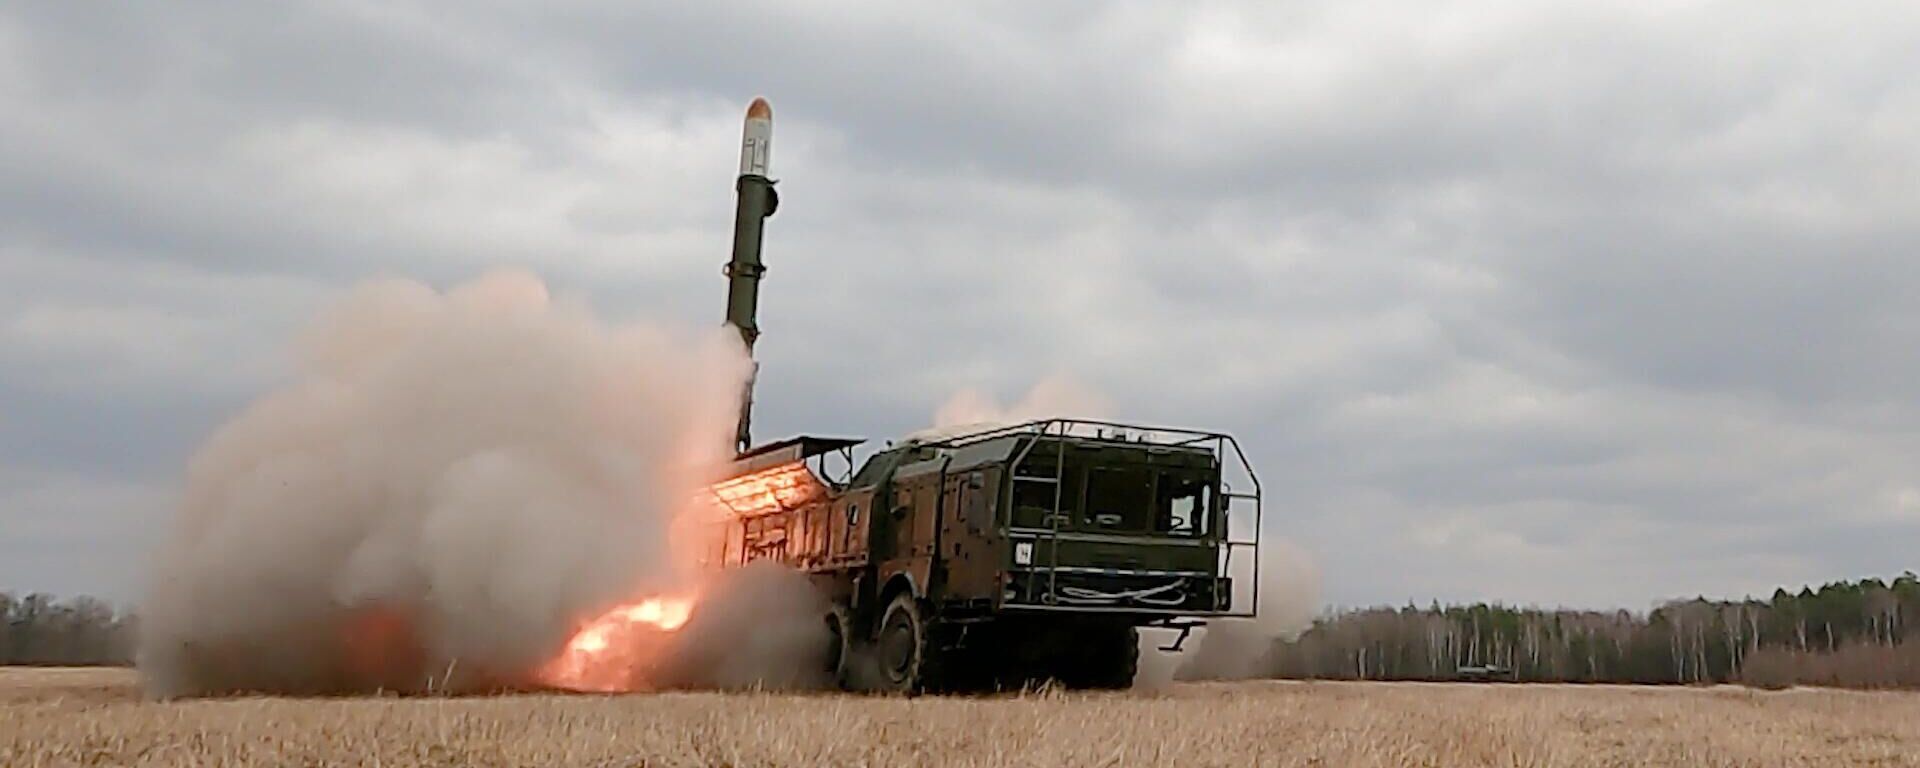 Удар оперативно-тактическим ракетным комплексом Искандер по объектам ВСУ на территории Украины - Sputnik Latvija, 1920, 26.04.2022